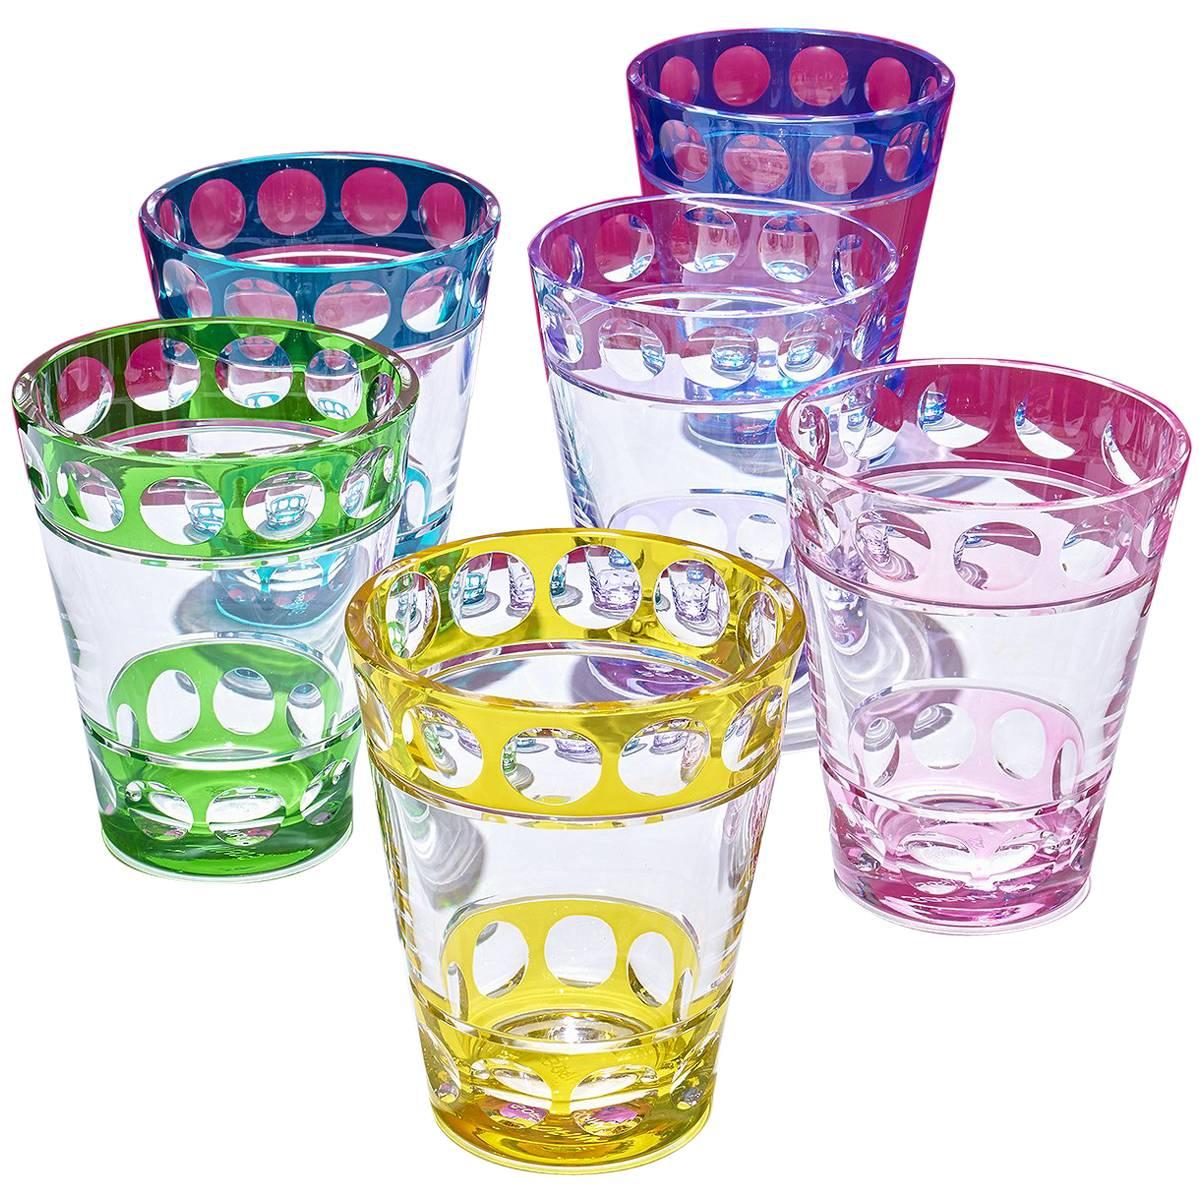 Vase aus mundgeblasenem Kristall mit handgeschnitztem Blasenmuster in sechs Farben. Der obere und untere Rand der Vase ist einfarbig und der mittlere Teil ist in klarem Kristall. Die runden Blasen oben und unten werden von bayerischen Glaskünstlern